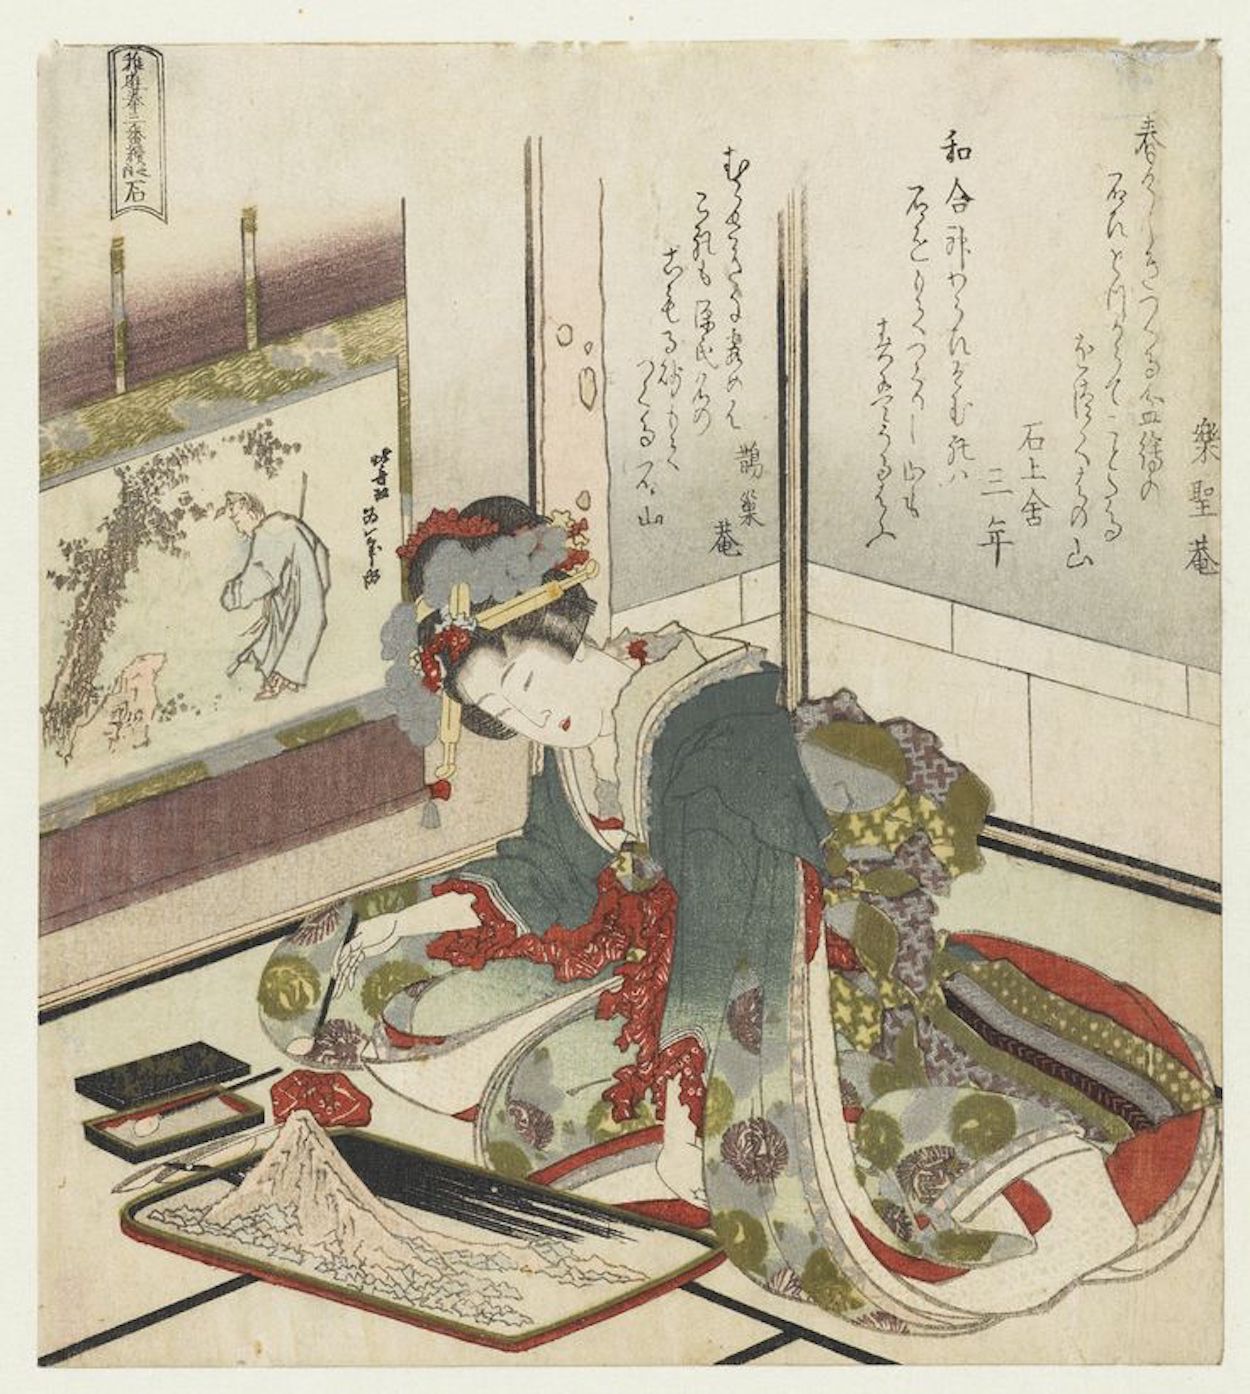 内石 by Katsushika Hokusai - 1823 